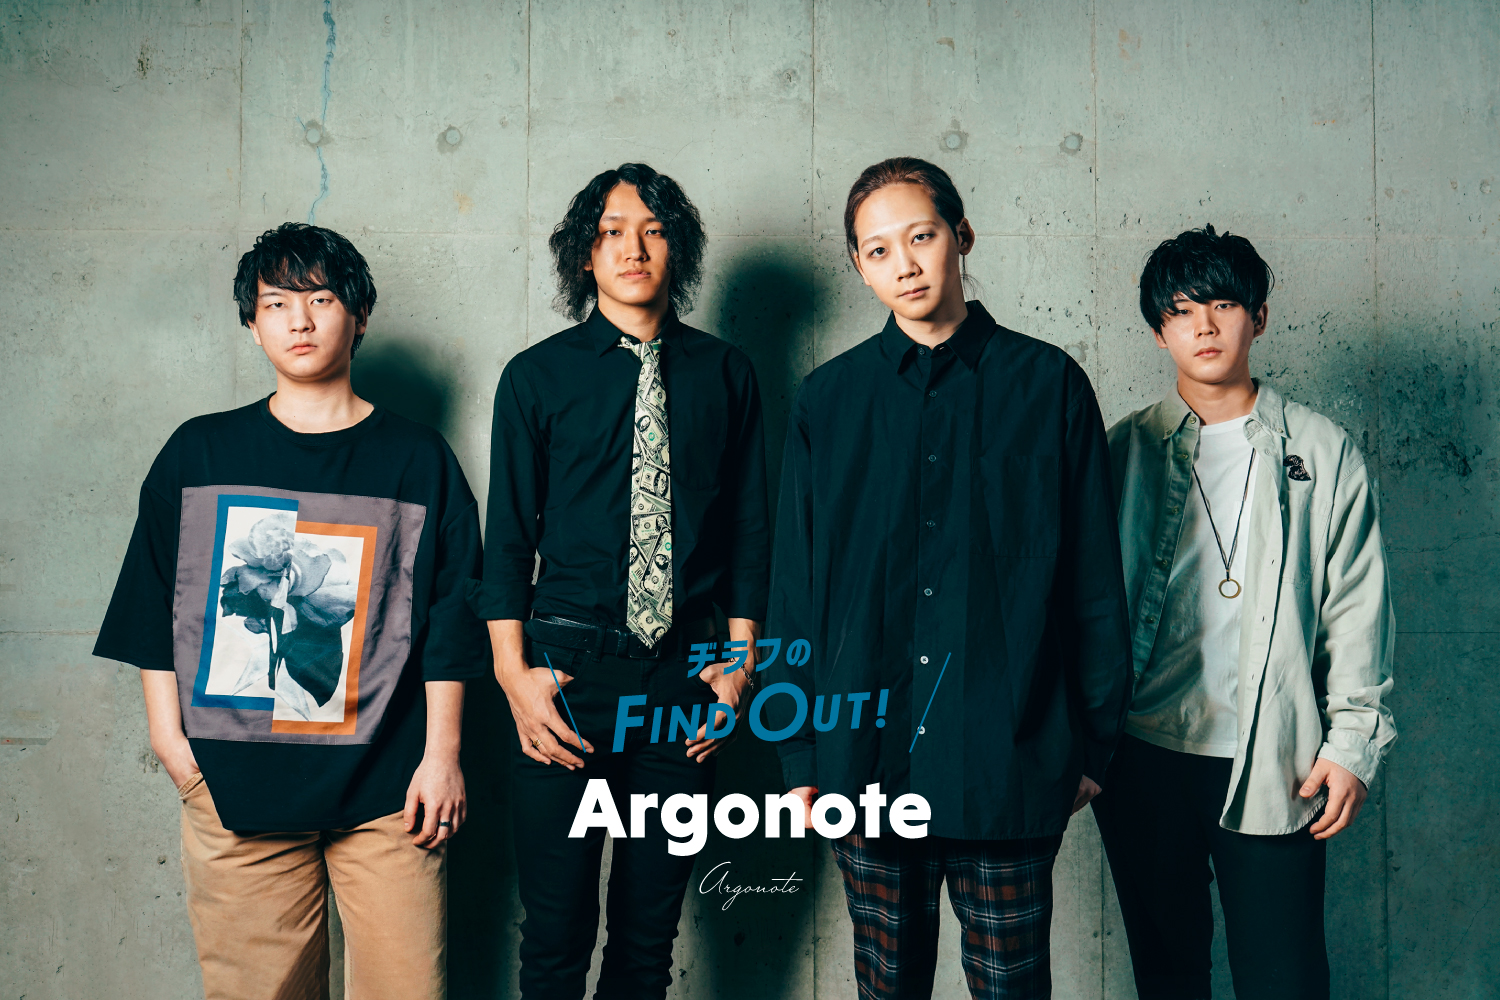 【アーティスト紹介】Argonote | あふれる情熱と冷静さをあわせ持ち、揺るがない個性で魅せる4ピースバンド